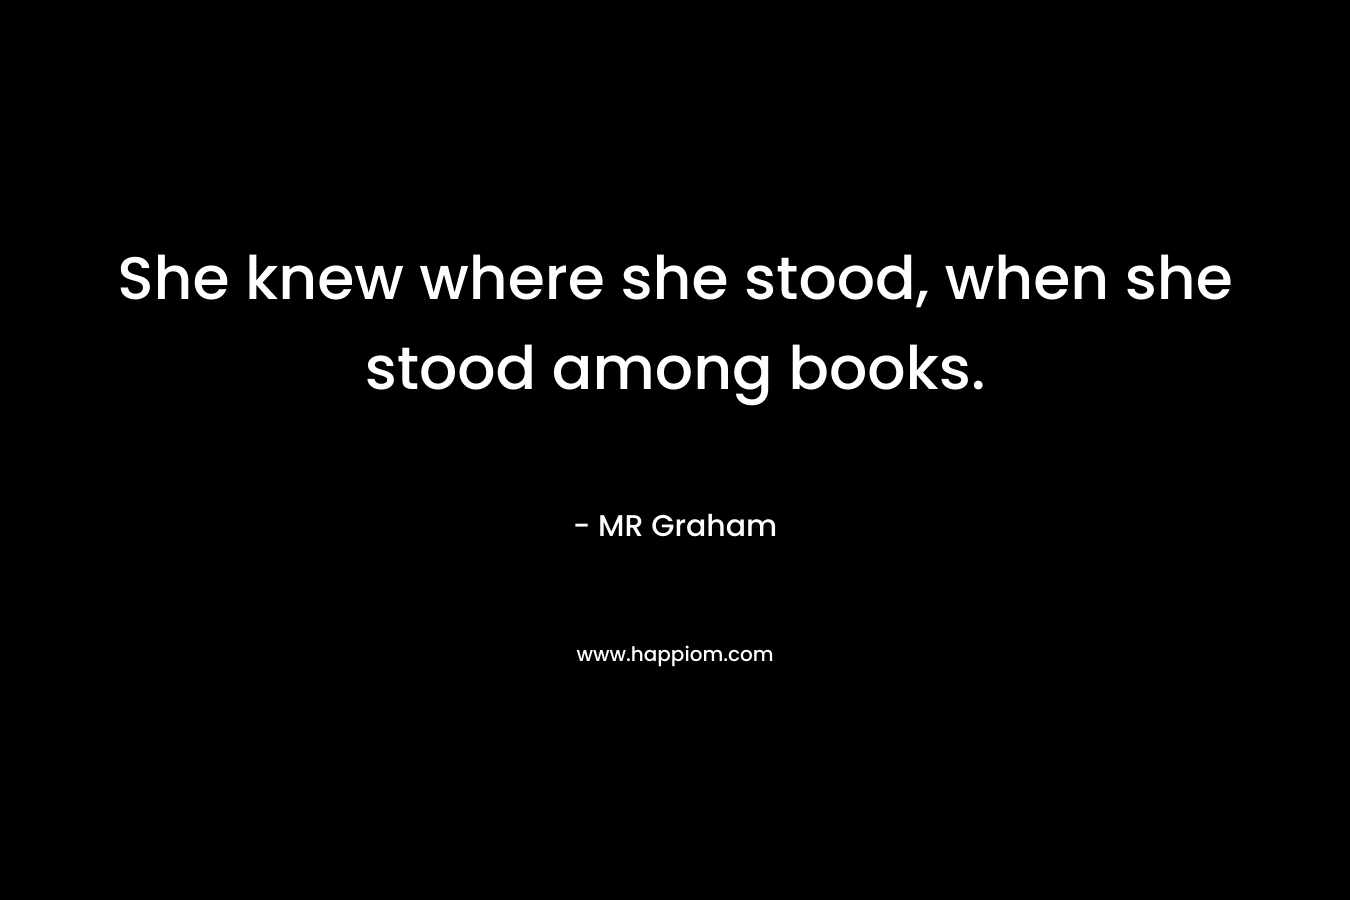 She knew where she stood, when she stood among books.